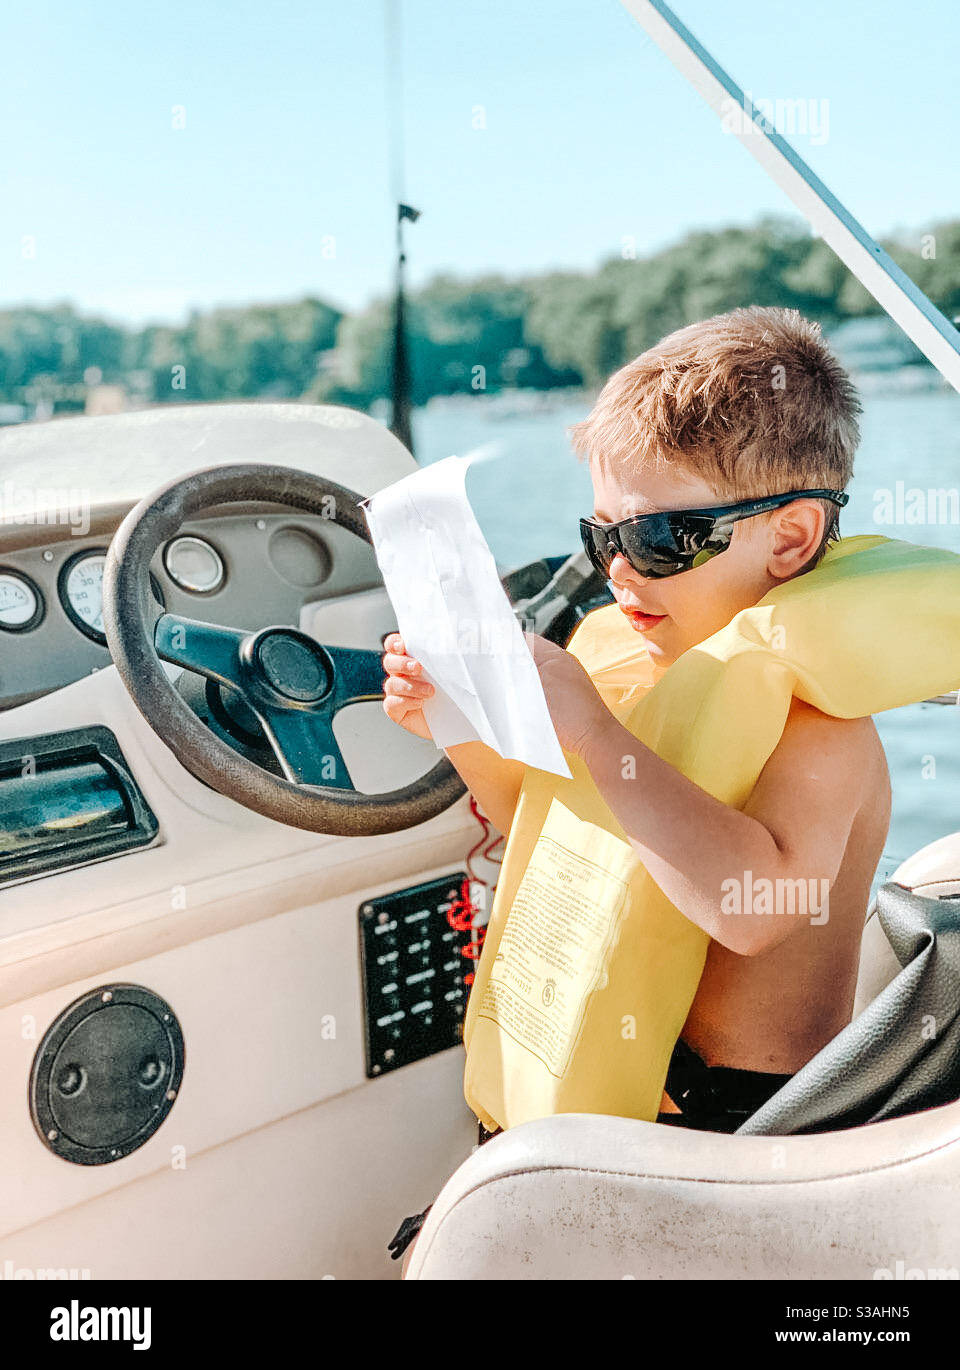 Junge fahren ein Boot draußen auf einem See auf einem Sonniger Tag Stockfoto